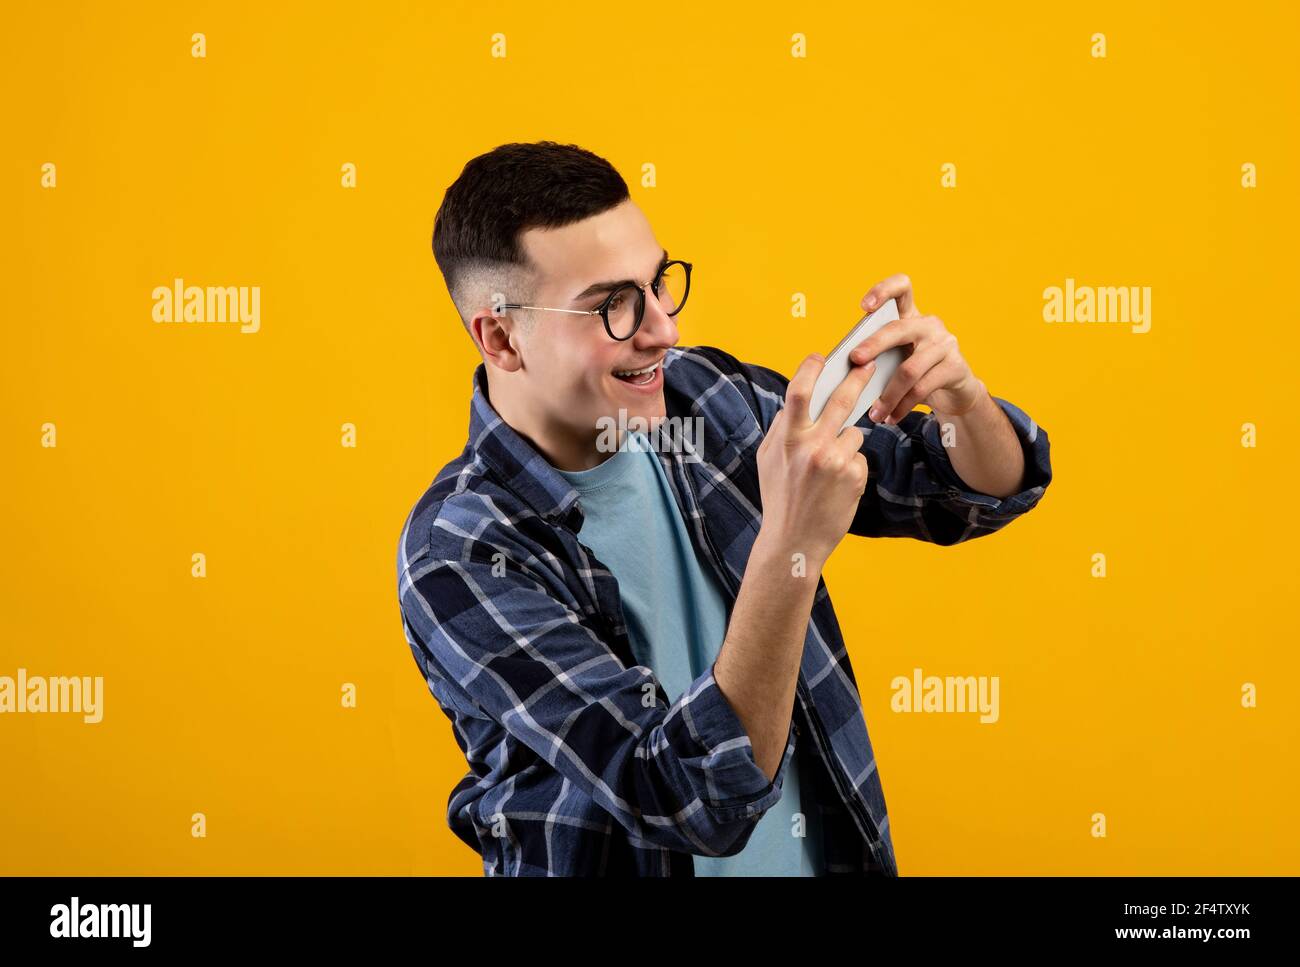 Online-Gaming-Konzept. Portrait von positiven jungen Kerl spielen Videospiele auf dem Smartphone über orangen Studio-Hintergrund Stockfoto